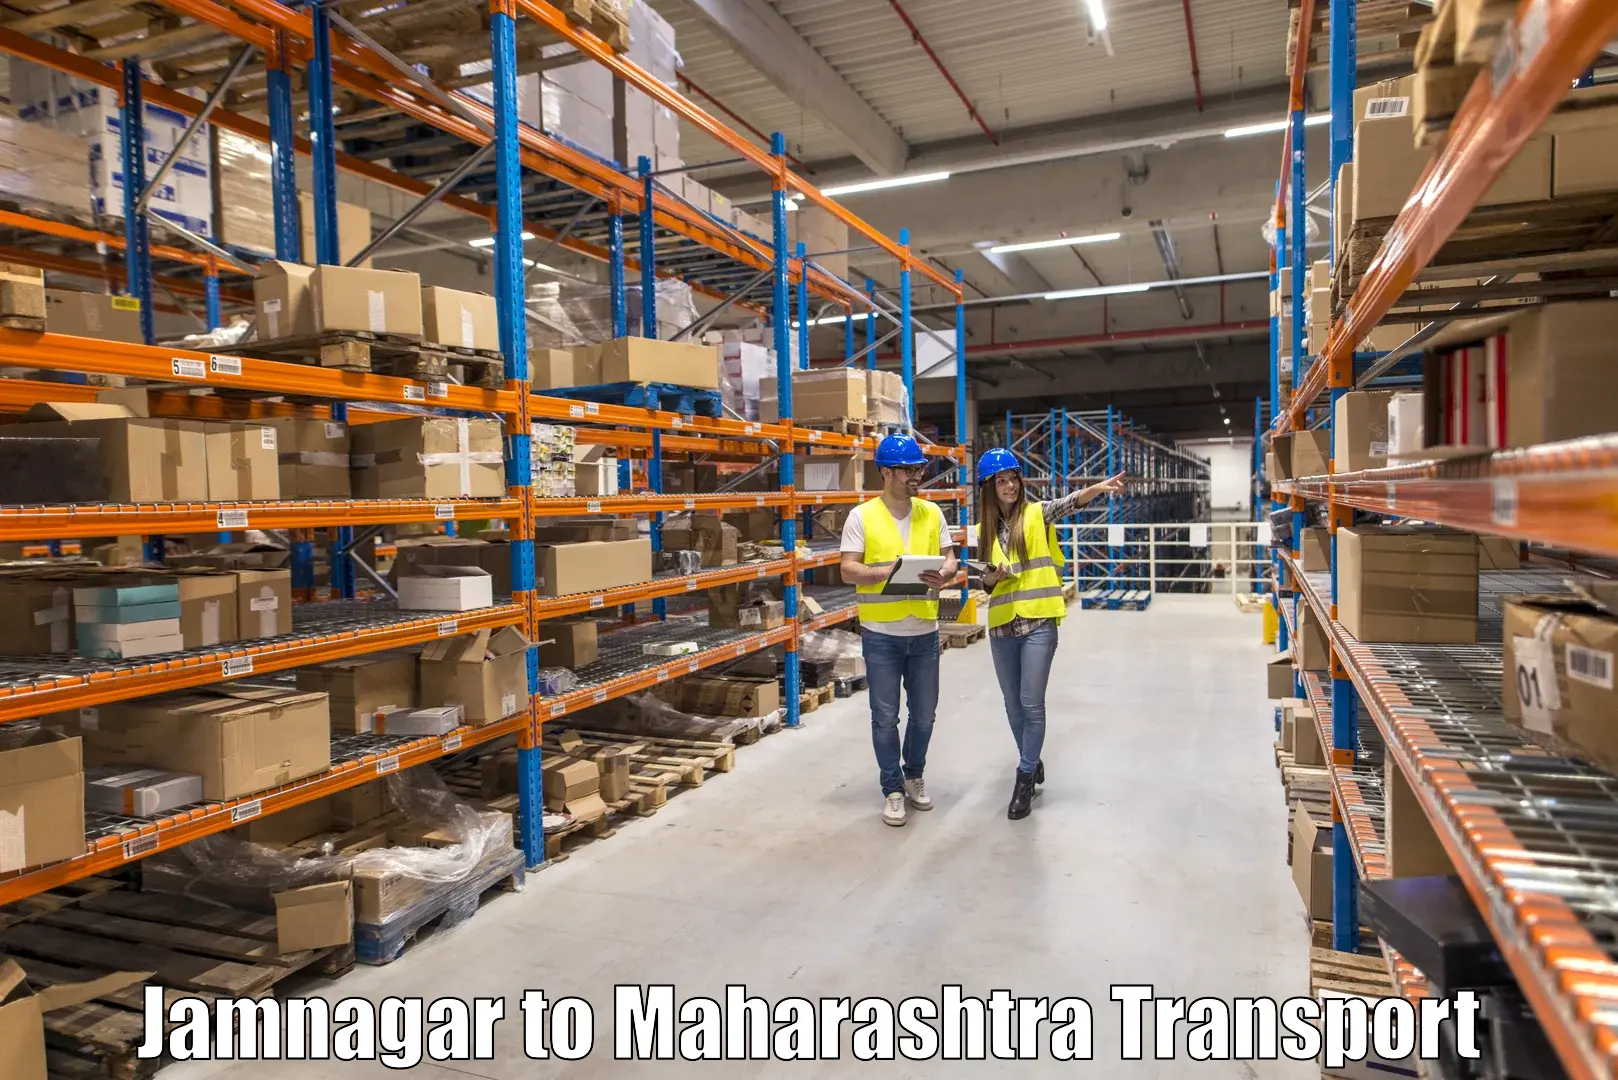 Daily transport service Jamnagar to Sinnar